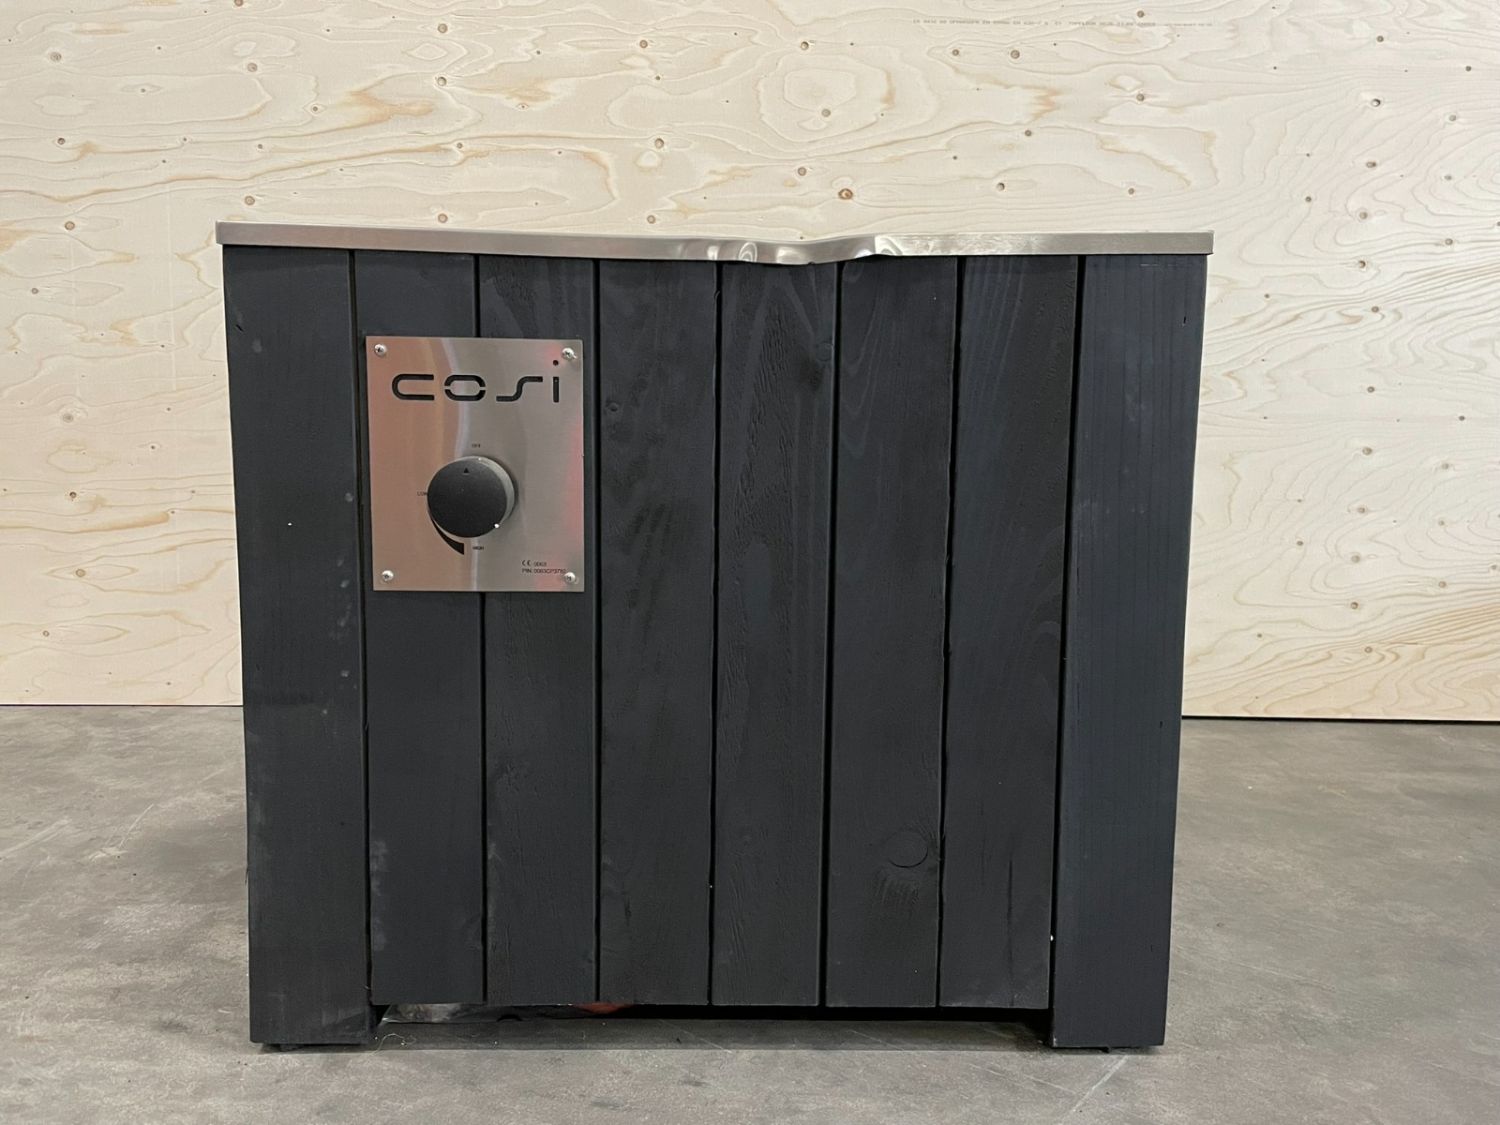 Cosicube 70 zwart sfeerhaard 70x70x58 cm - incl. afdekhoes, houtblokken en lavastenen - licht beschadigd - SALE02091